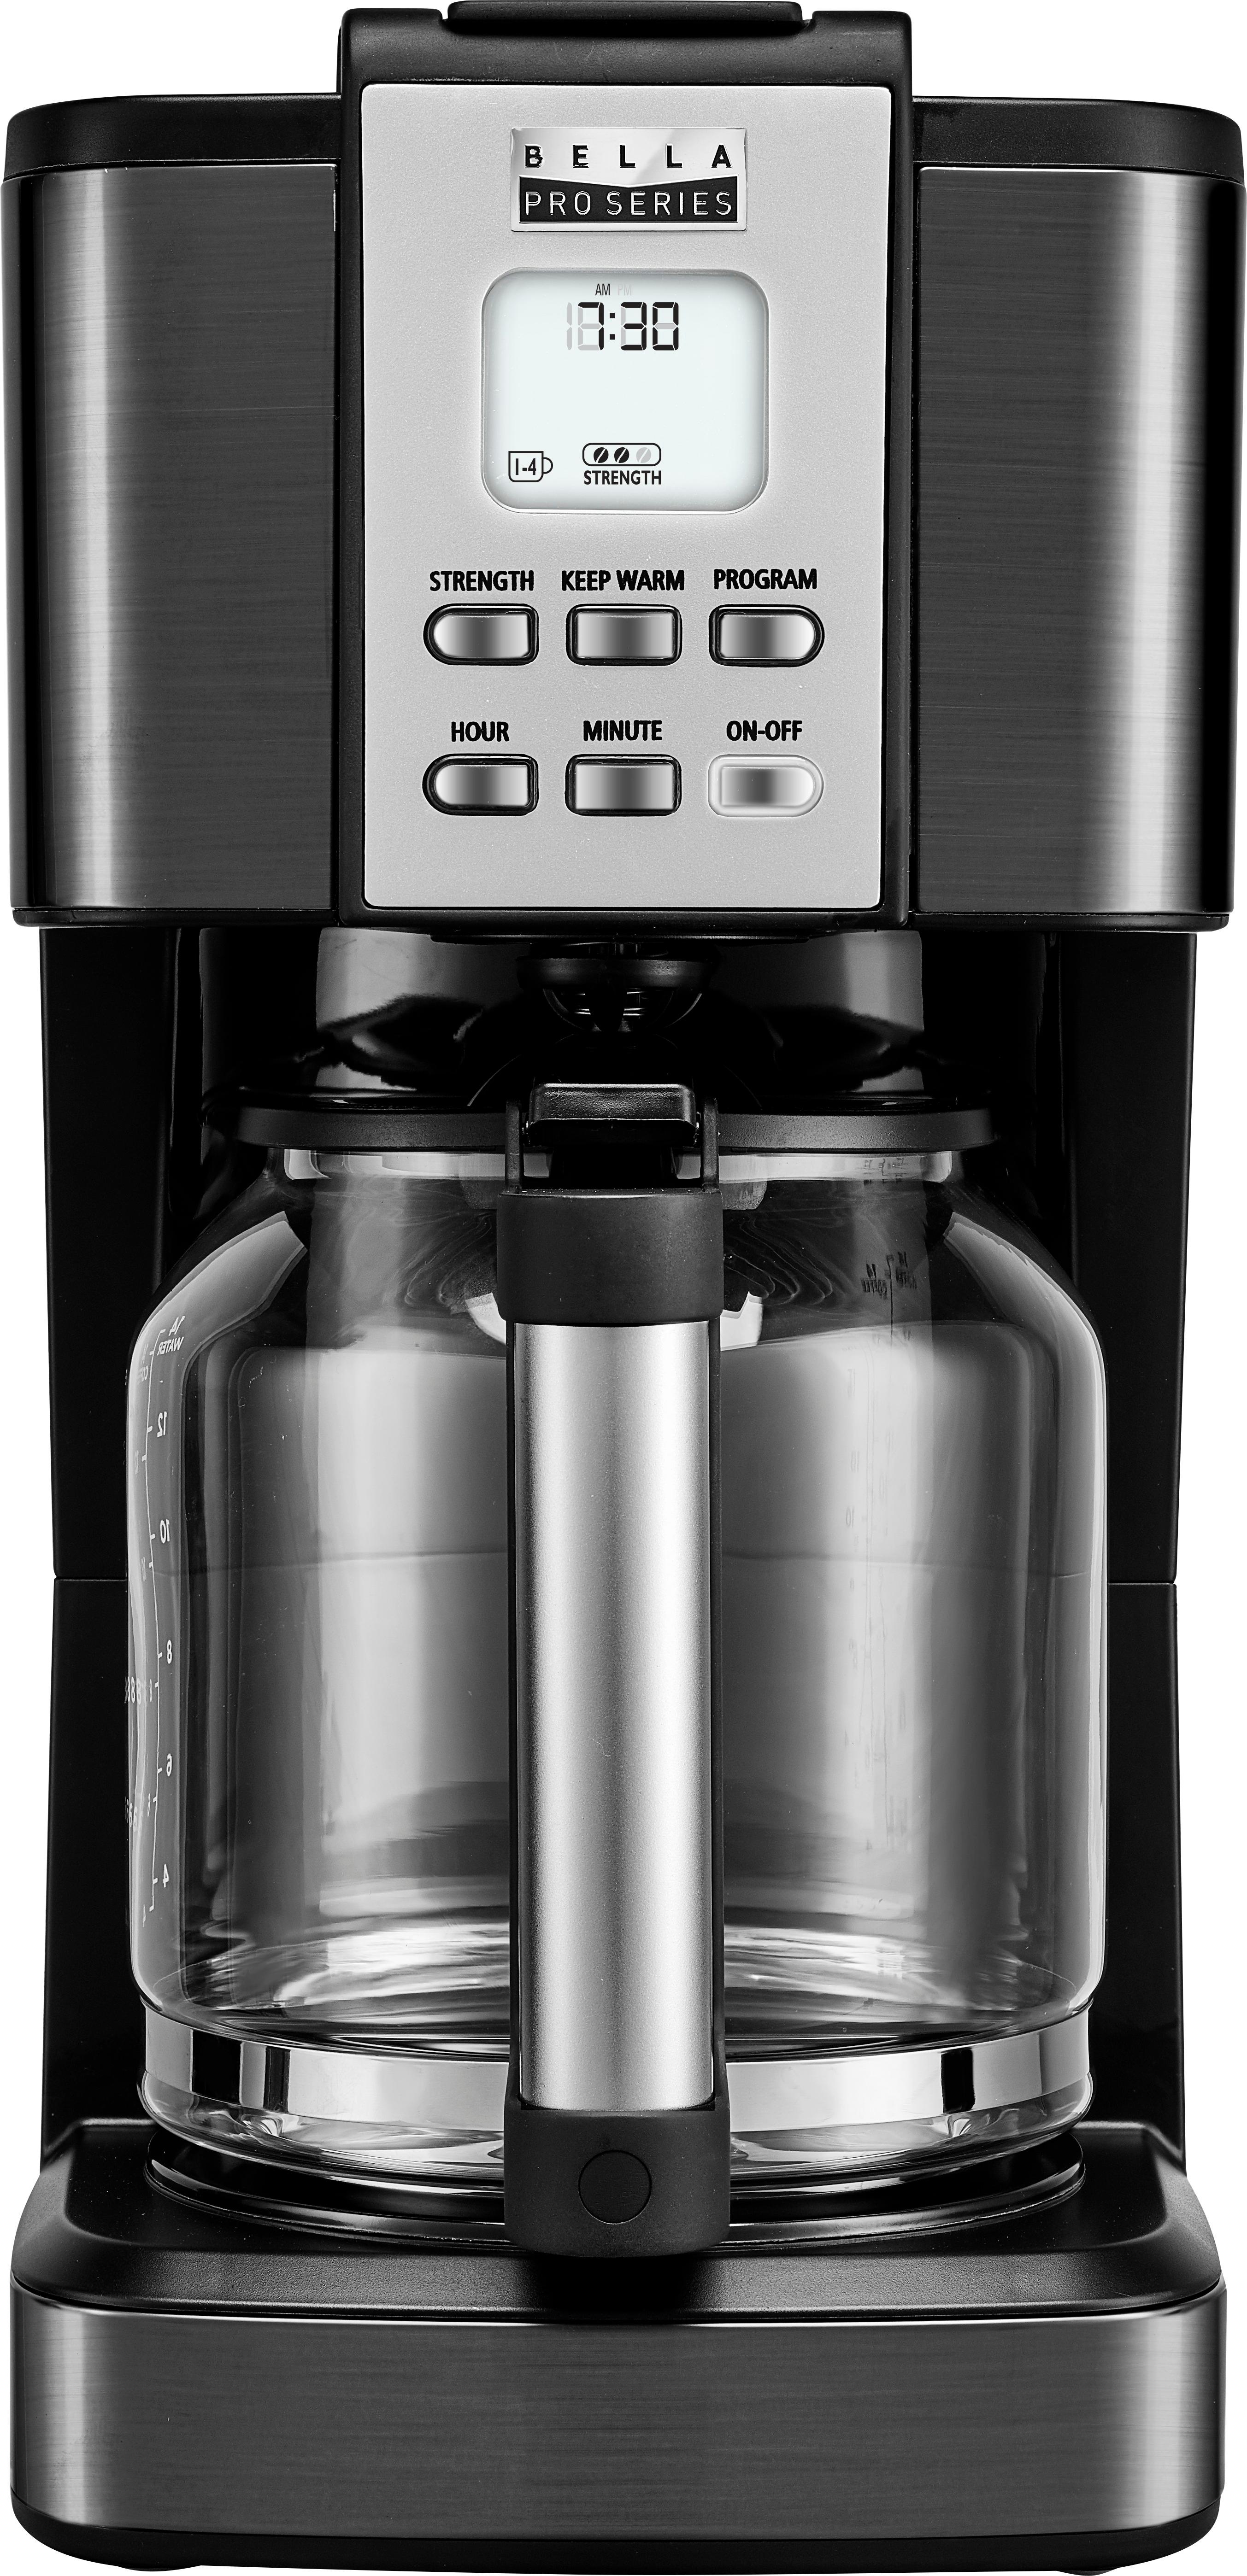 Bella Pro Series 14-Cup Coffee Maker Black stainless steel 90061 - Best Buy